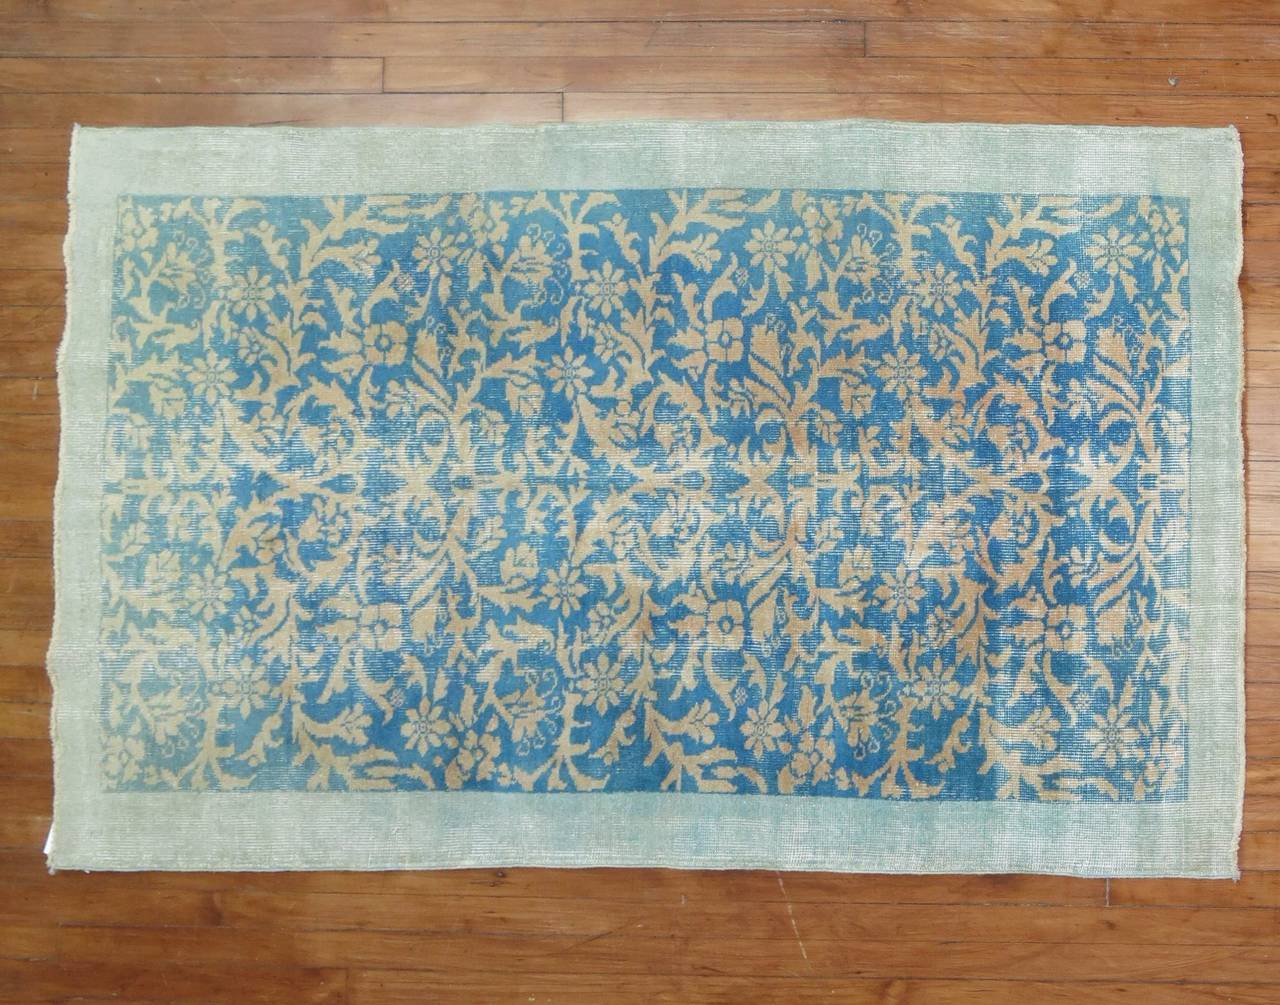 Türkischer Teppich aus der Mitte des Jahrhunderts mit einer schwer zu findenden türkisen Farbe.

3'11' x 6'7''